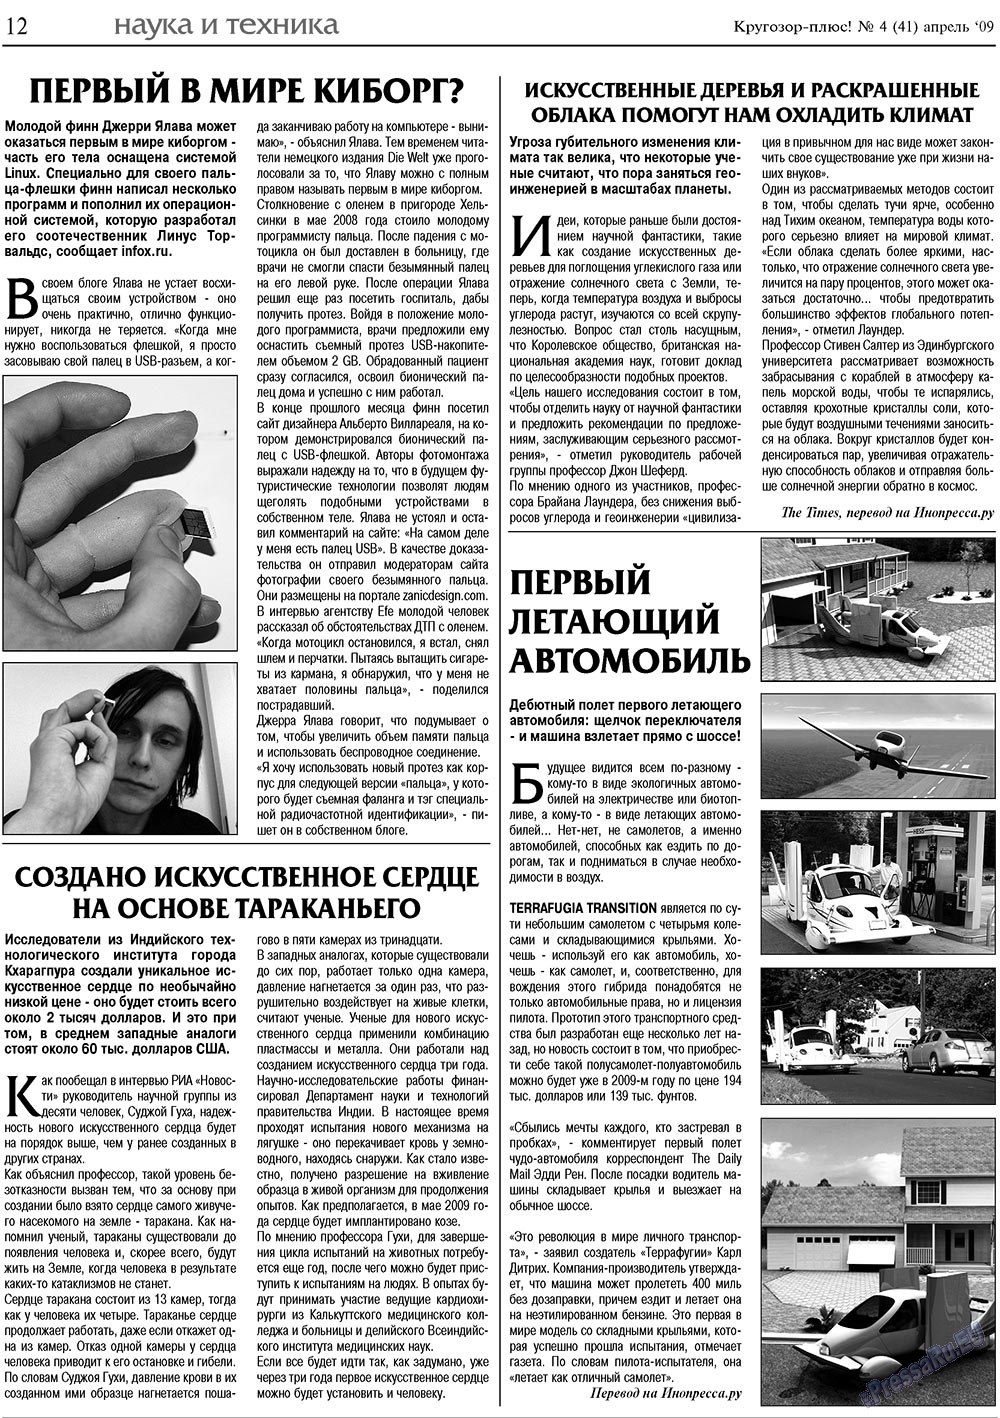 Кругозор плюс!, газета. 2009 №4 стр.12